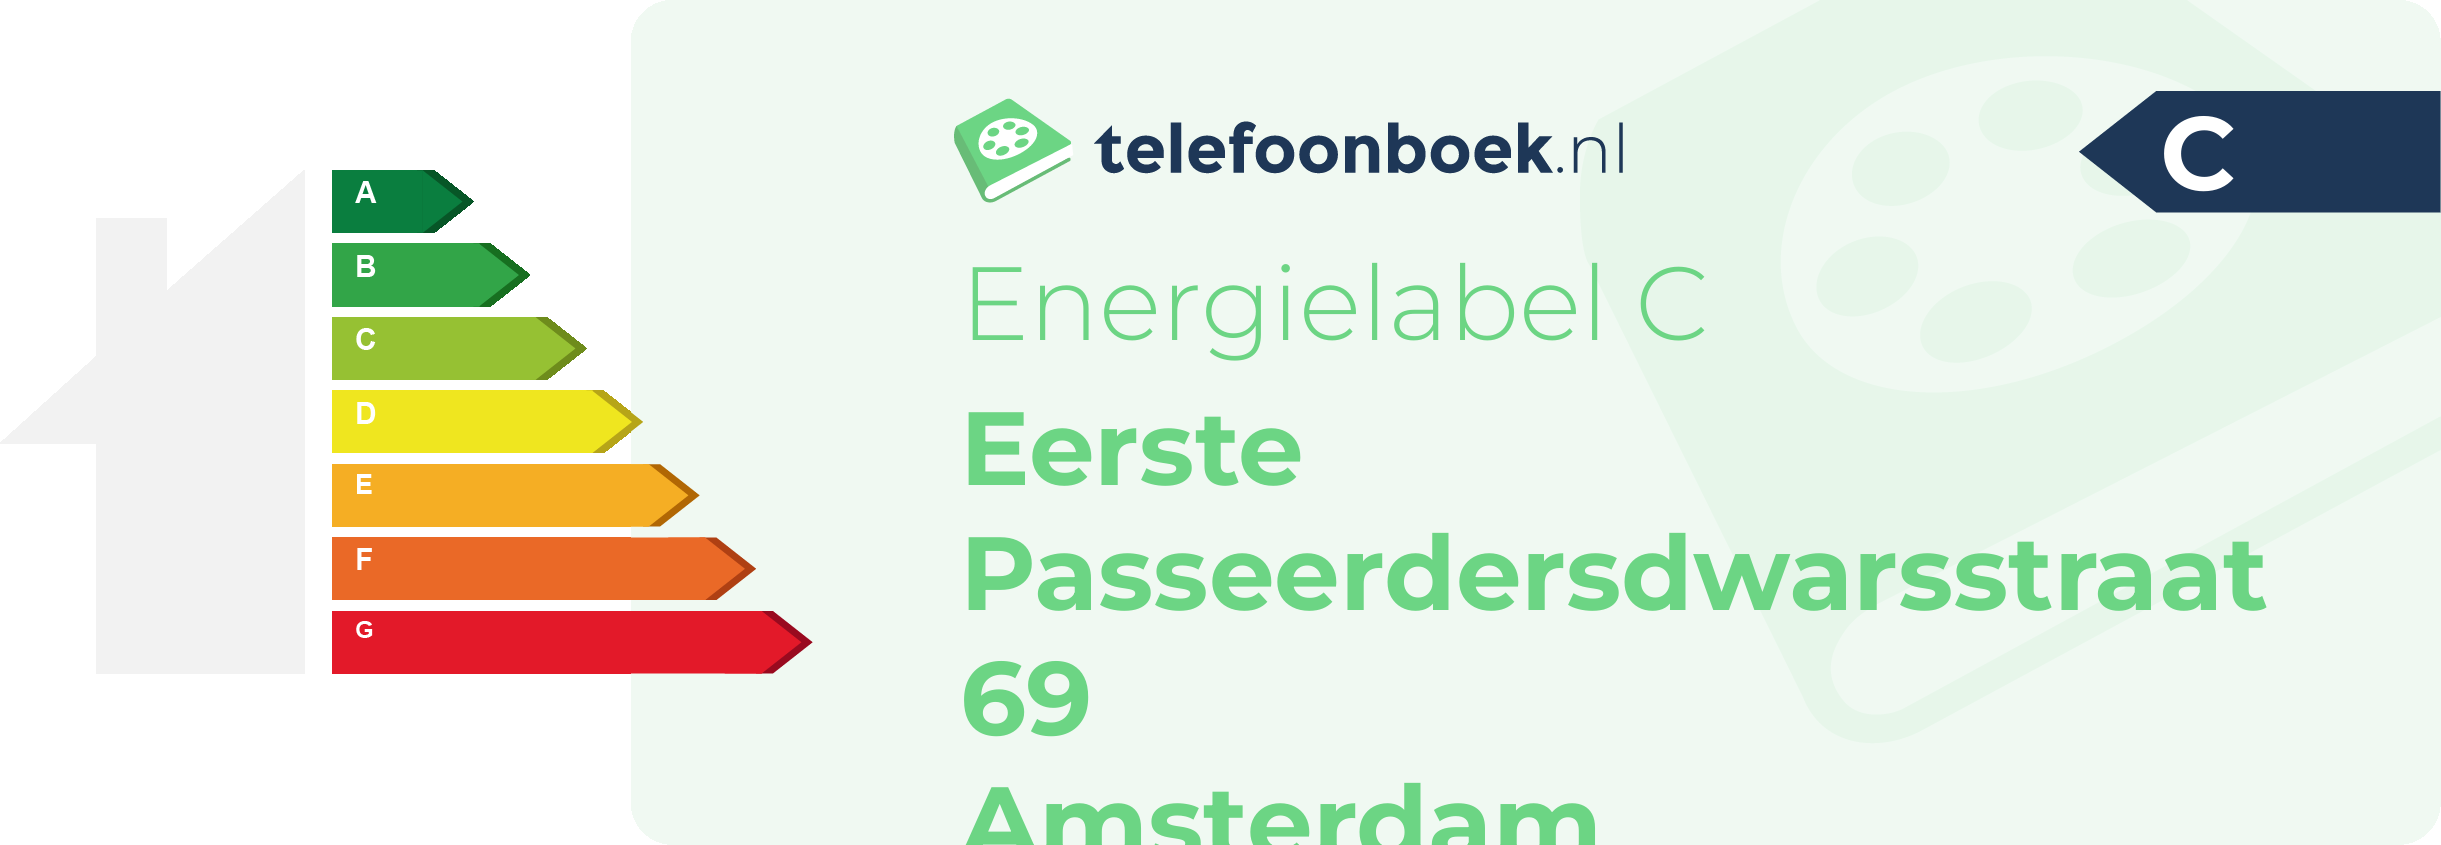 Energielabel Eerste Passeerdersdwarsstraat 69 Amsterdam